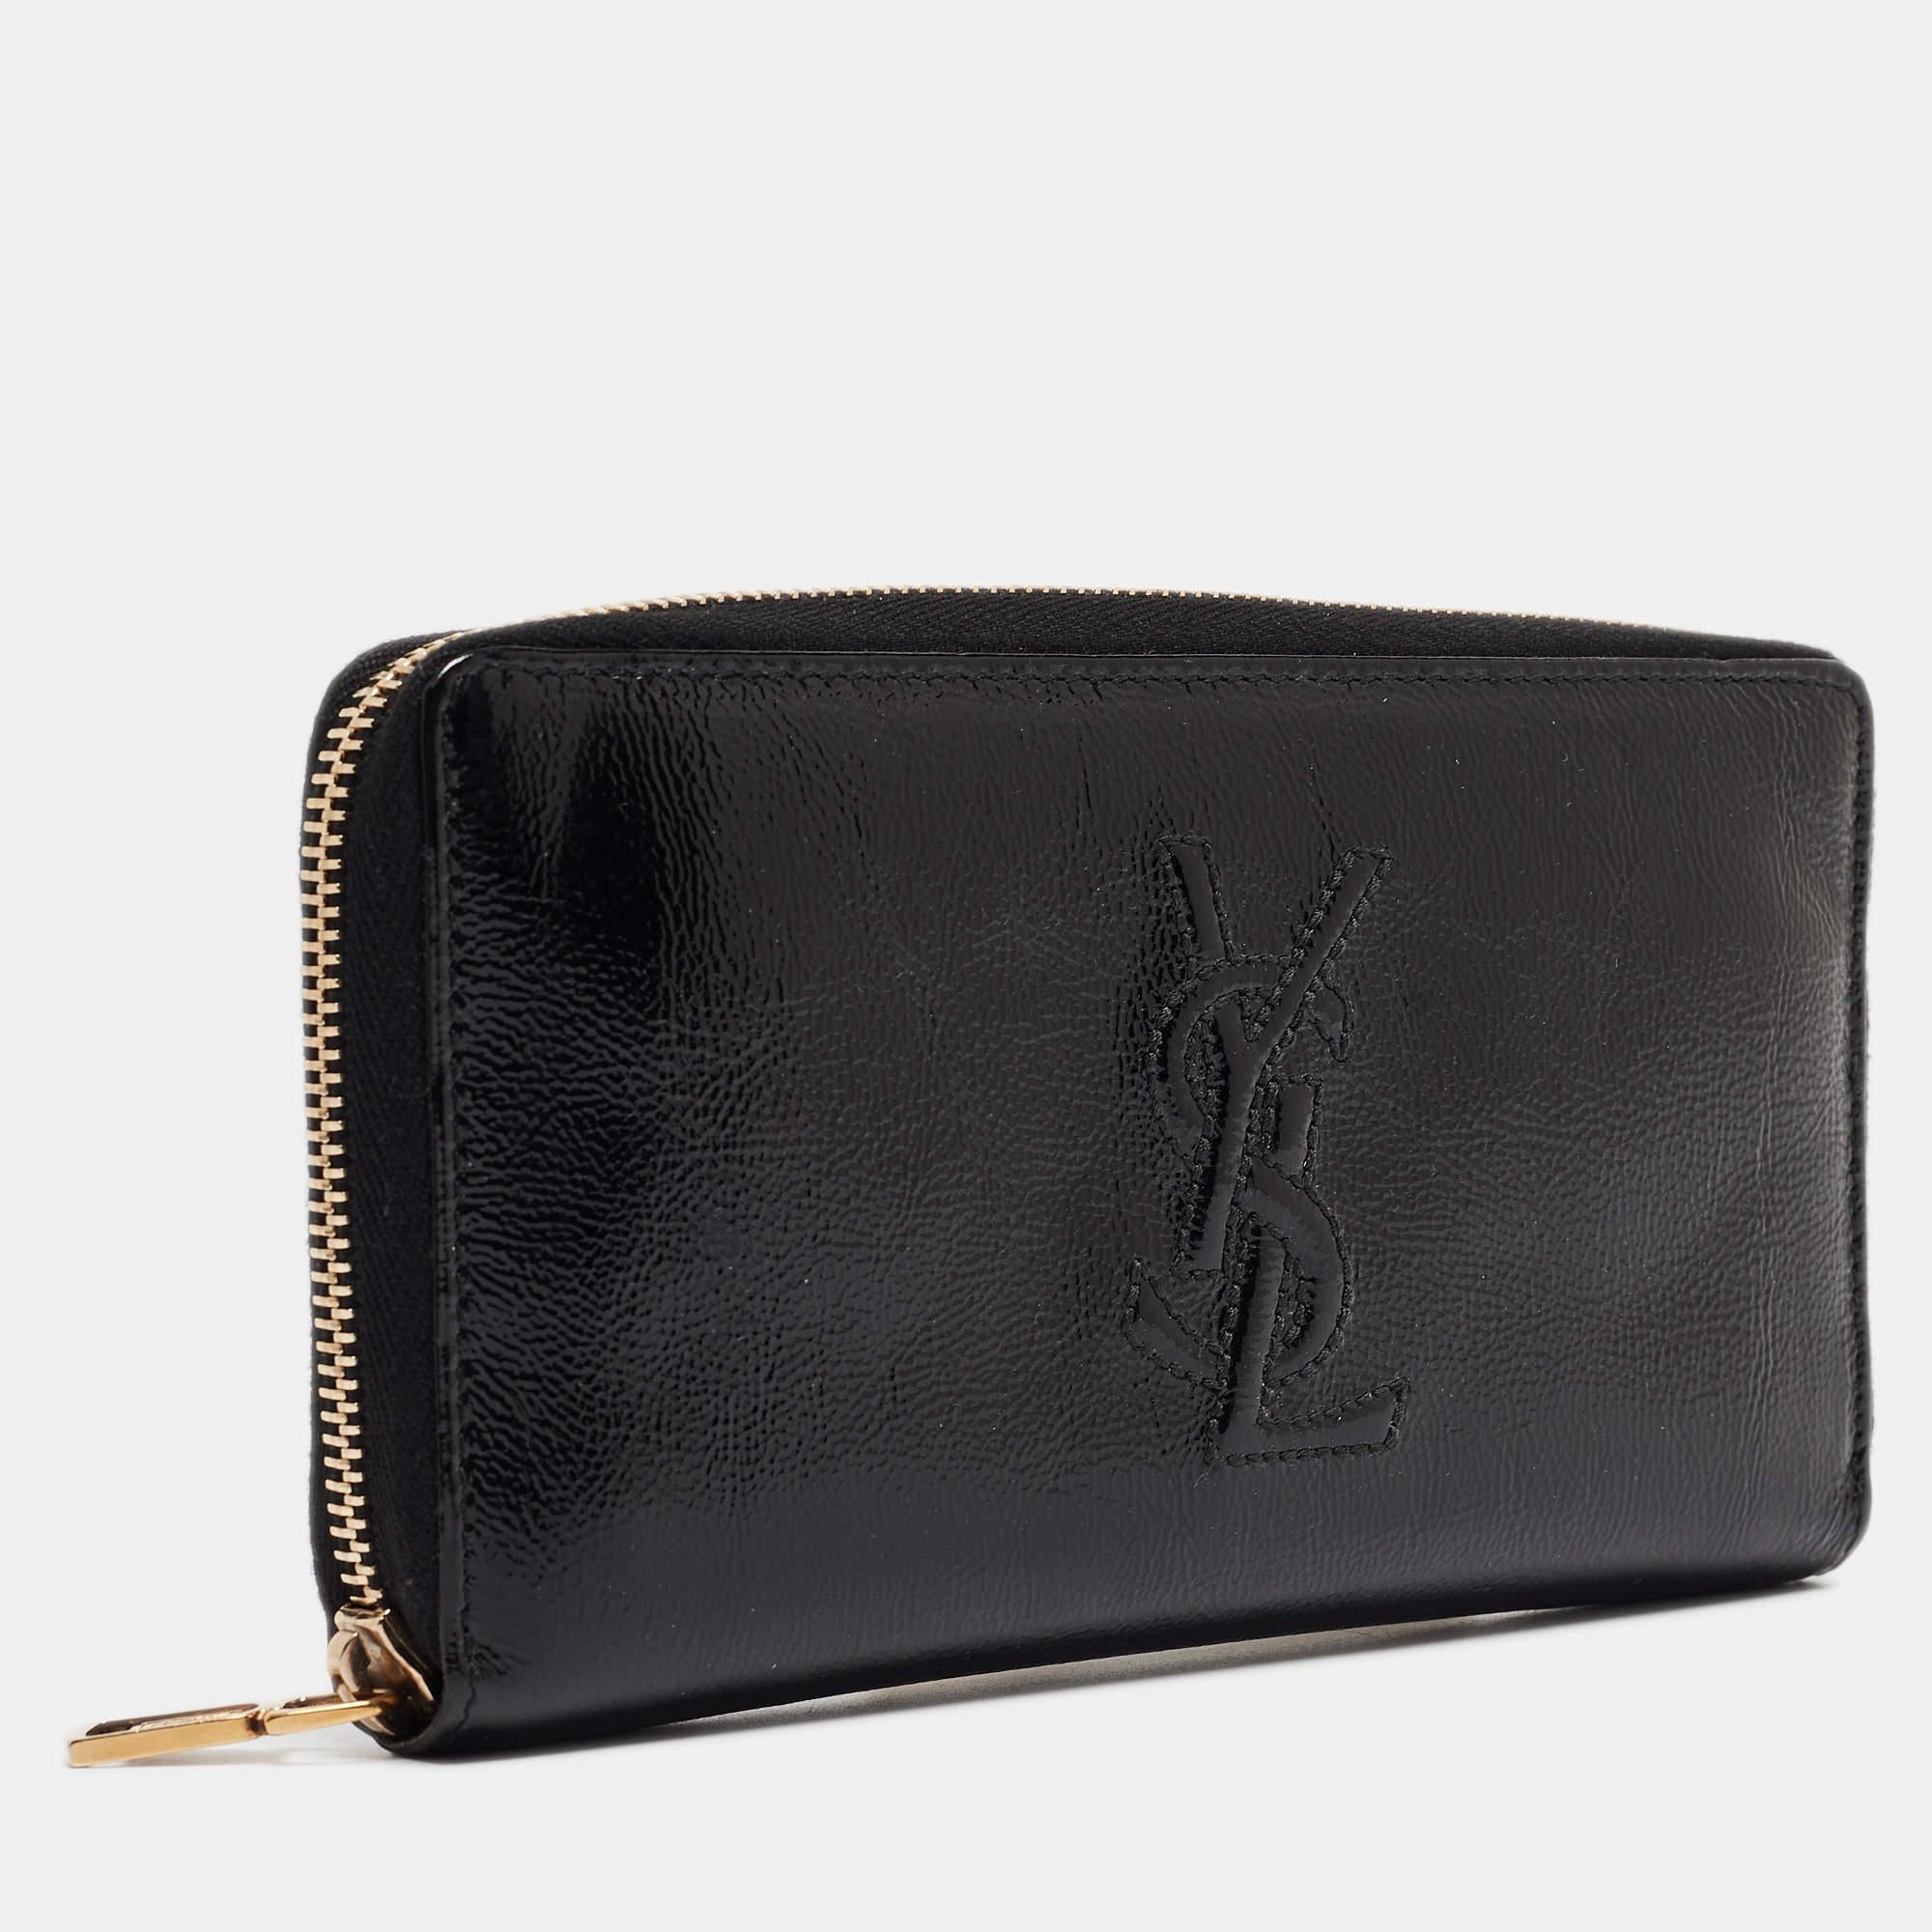 Un portefeuille ne doit pas seulement être beau mais aussi fonctionnel, comme ce joli portefeuille Belle De Jour d'Yves Saint Laurent. Fabrice en cuir verni noir, cette création présente un intérieur en tissu de cuir et des ferrures dorées. Ce